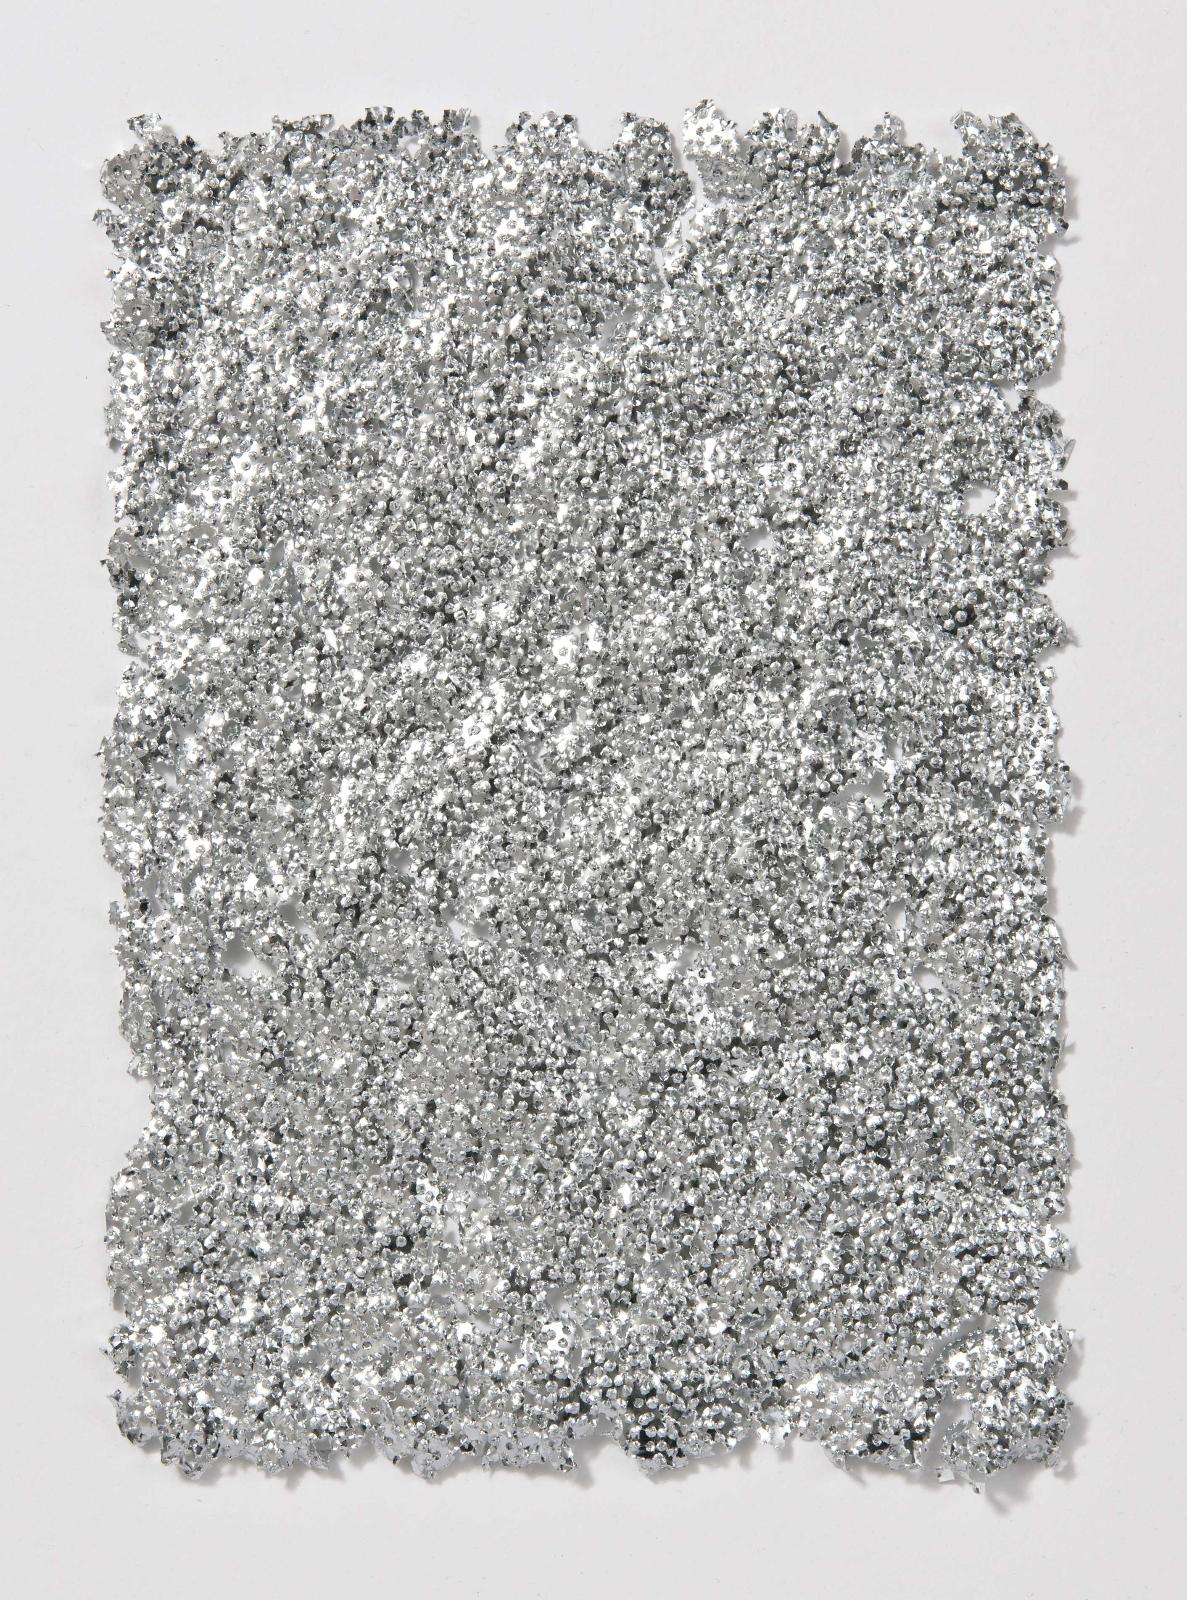 Martin Bruno Schmid, Bohrzeichnung, 2012, Bleistiftbohrung in aluminiumbedampftes Papier, 34 cm x 24 cm, gerahmt, verkauft!